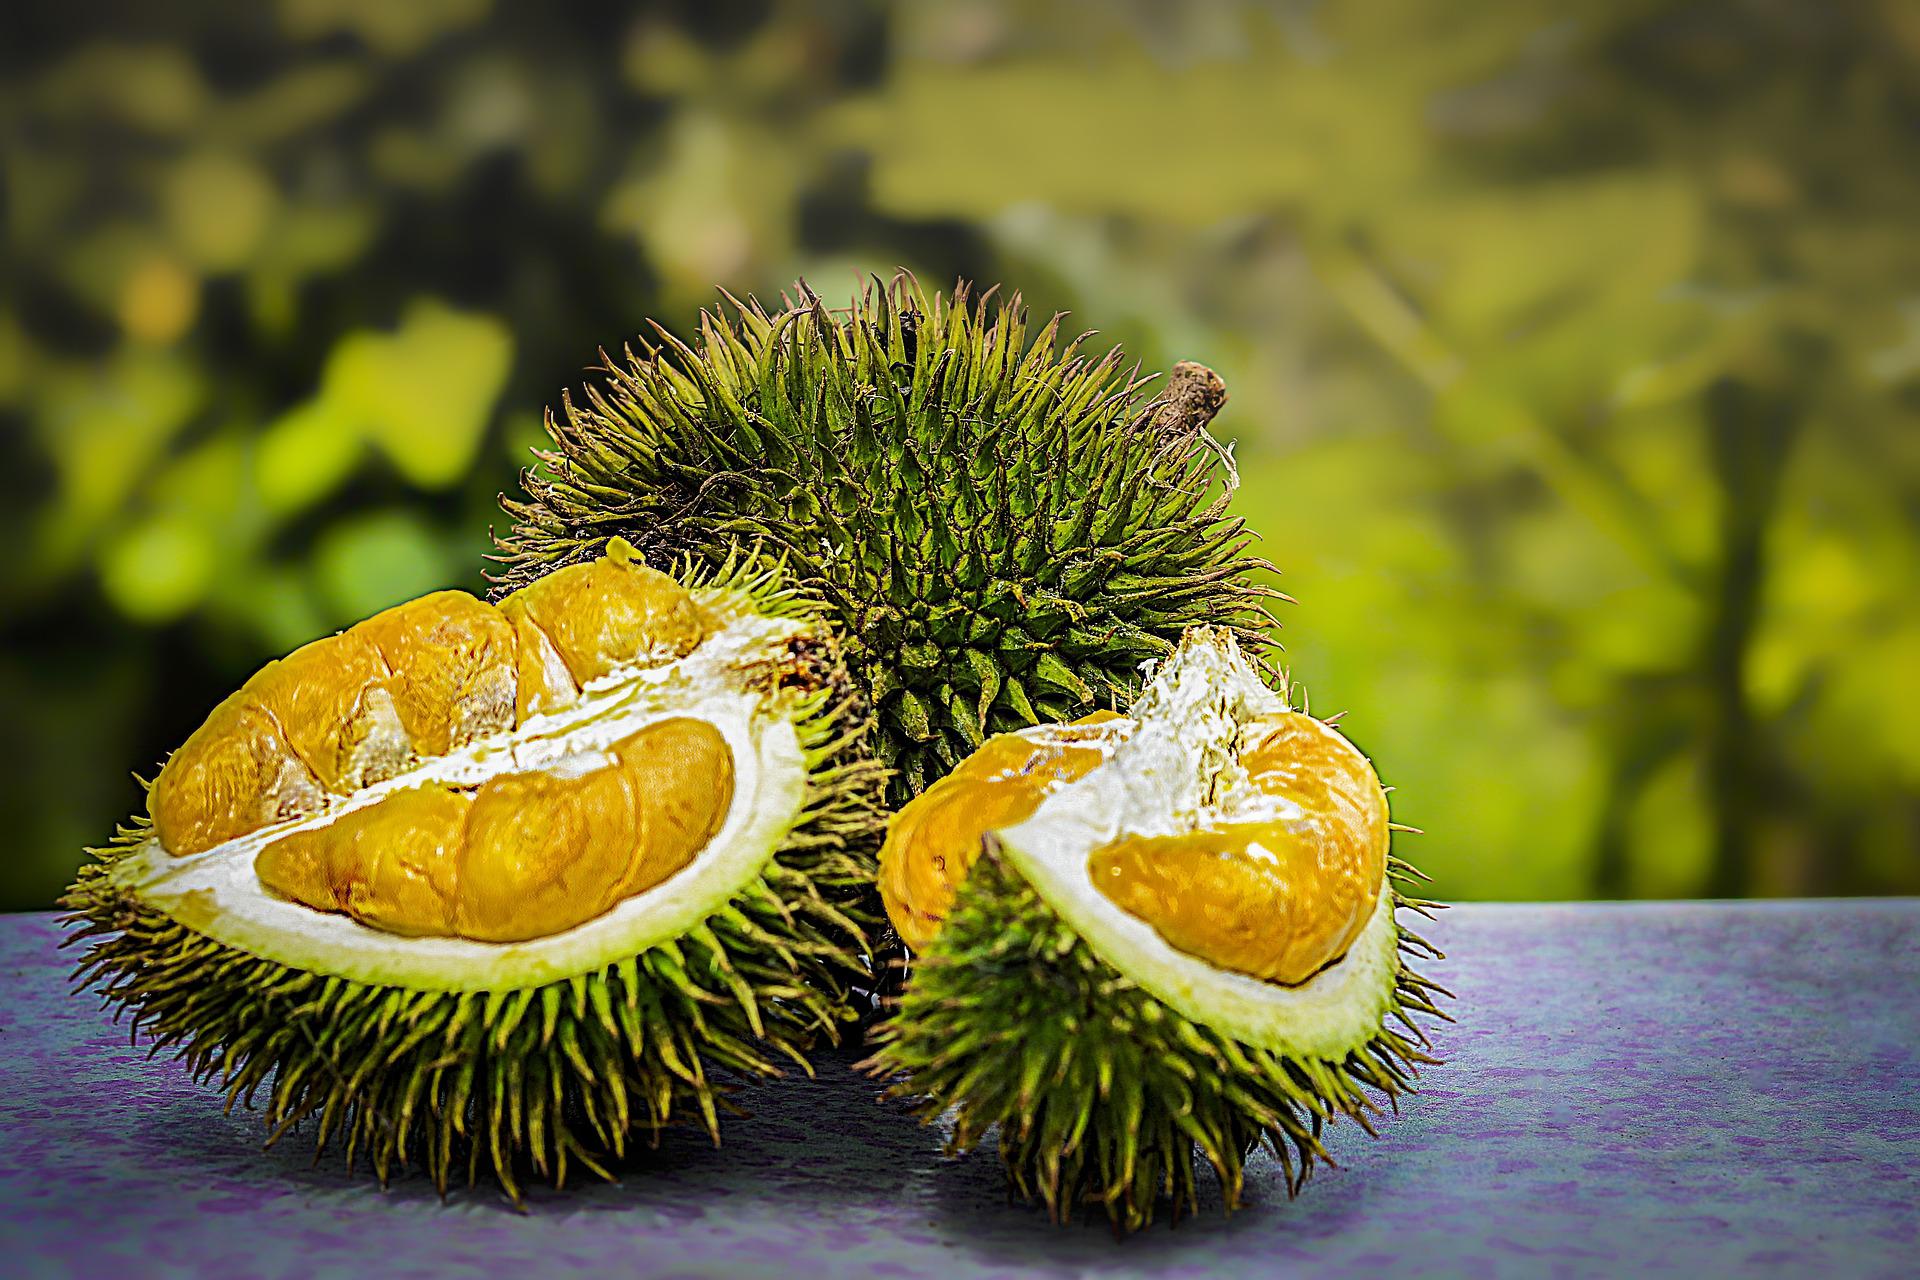 Il Durian: il frutto dall’odore molto forte e caratteristico